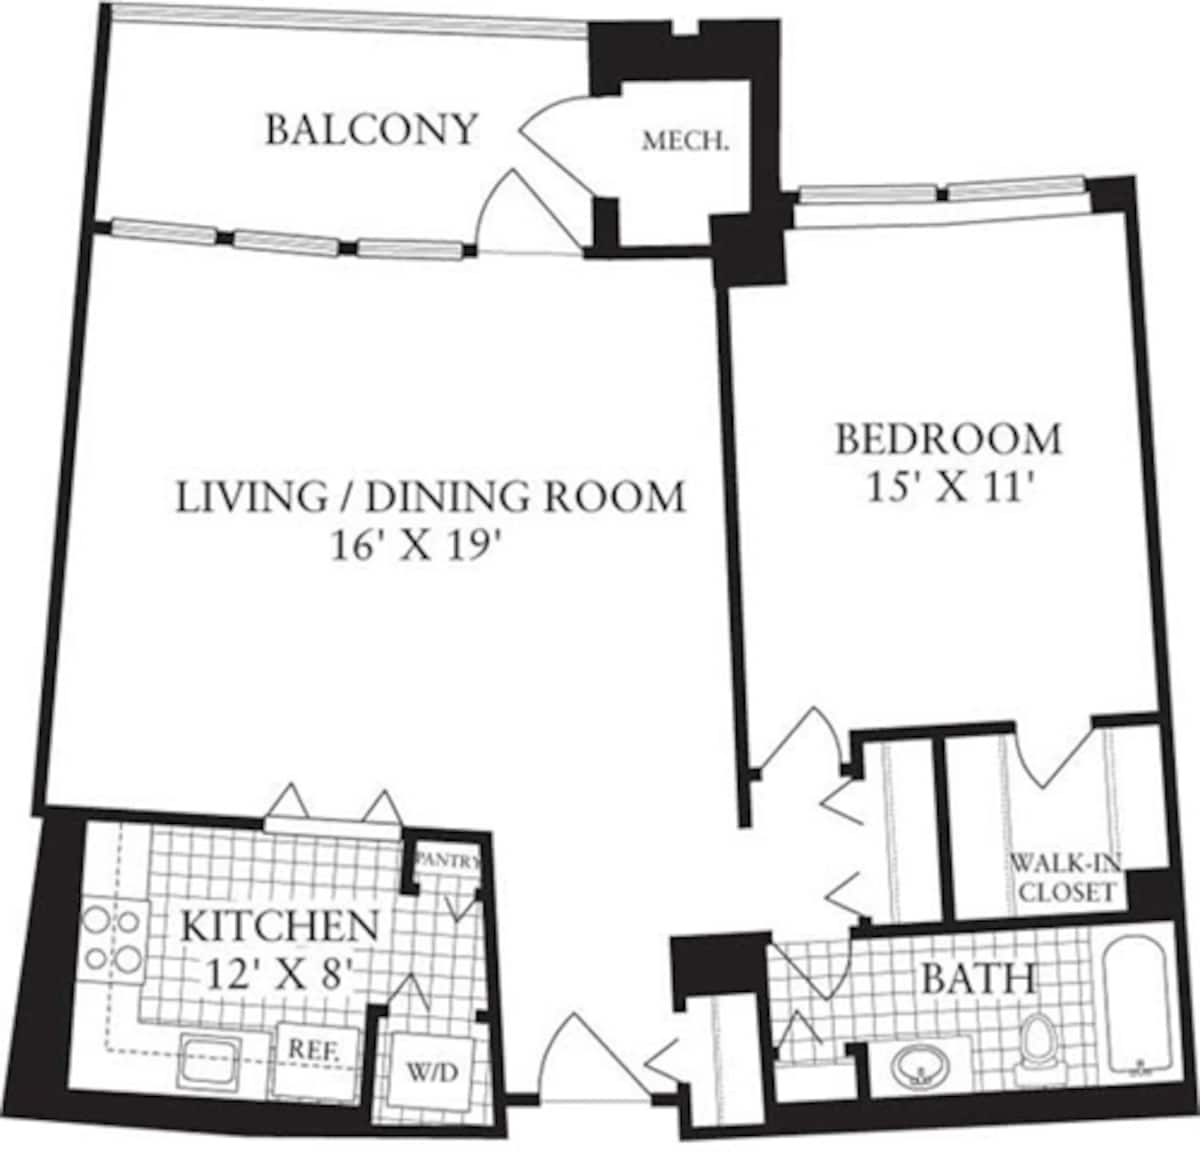 Floorplan diagram for 1 Bedroom M, showing 1 bedroom